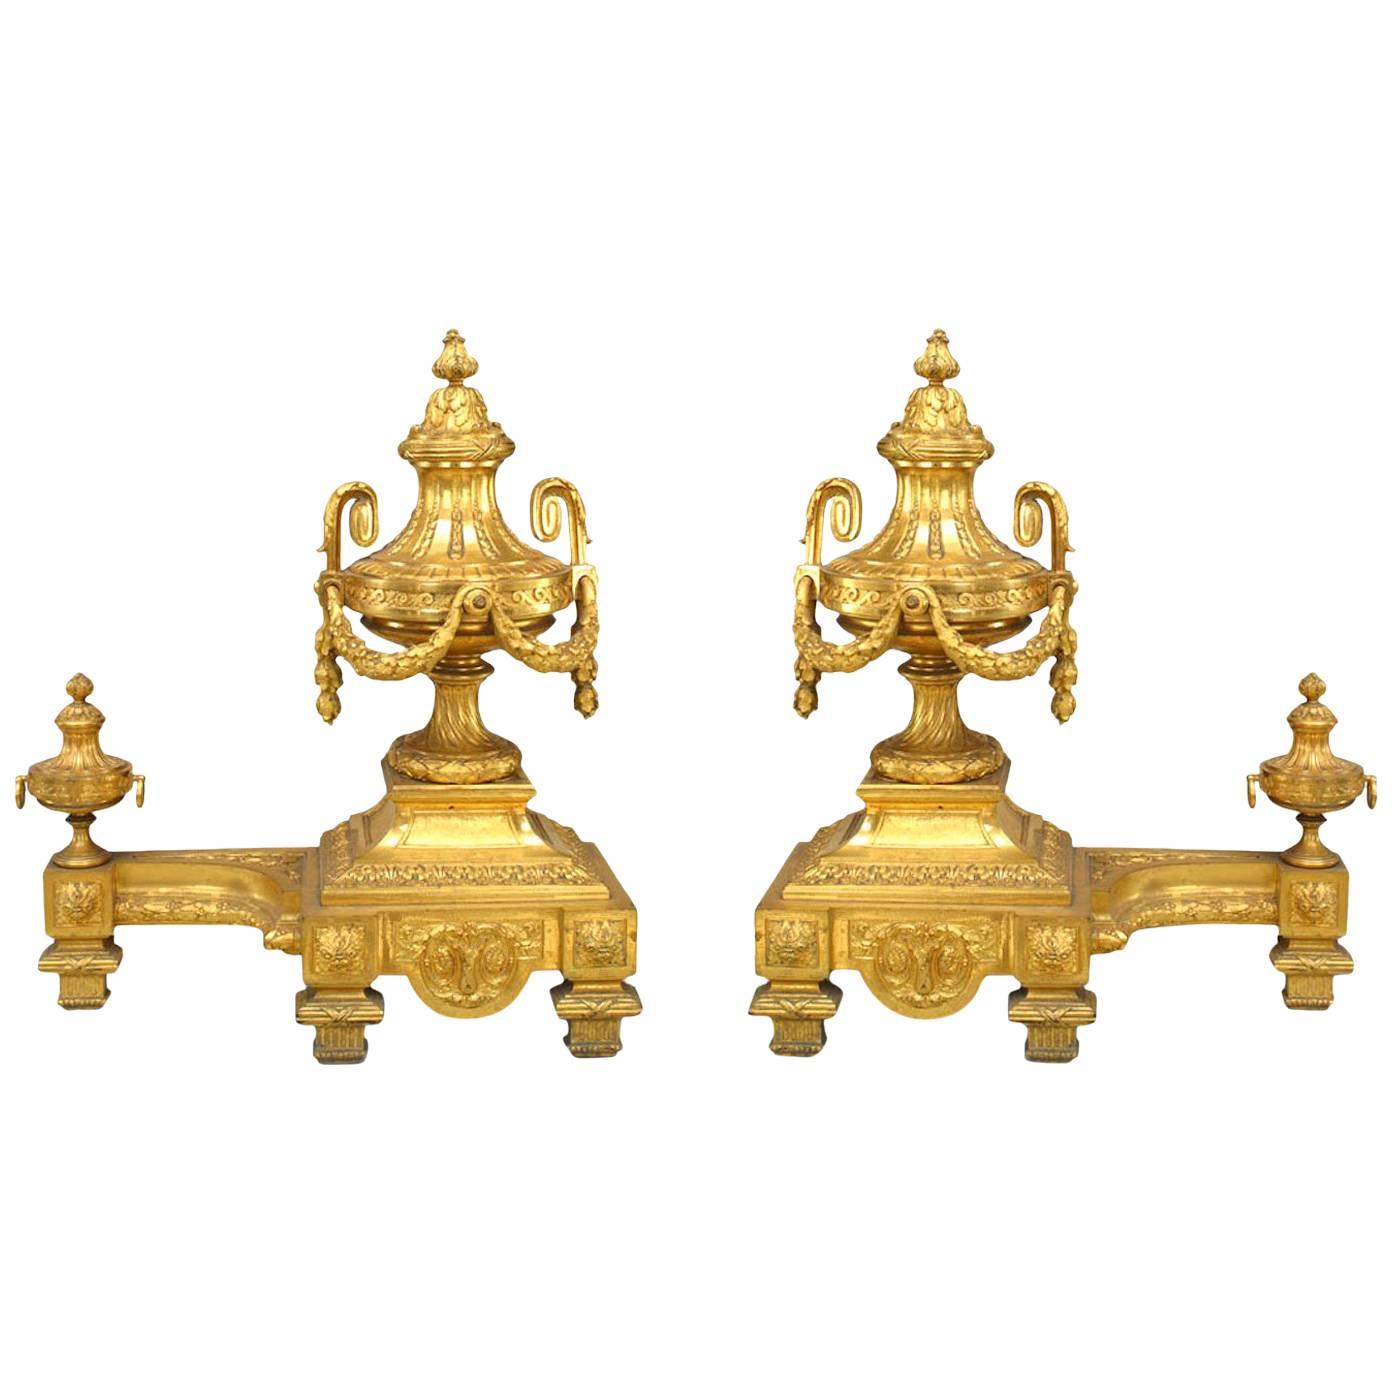 Paire d'urnes et de chenets de feston en bronze doré de style Louis XVI du 19e siècle